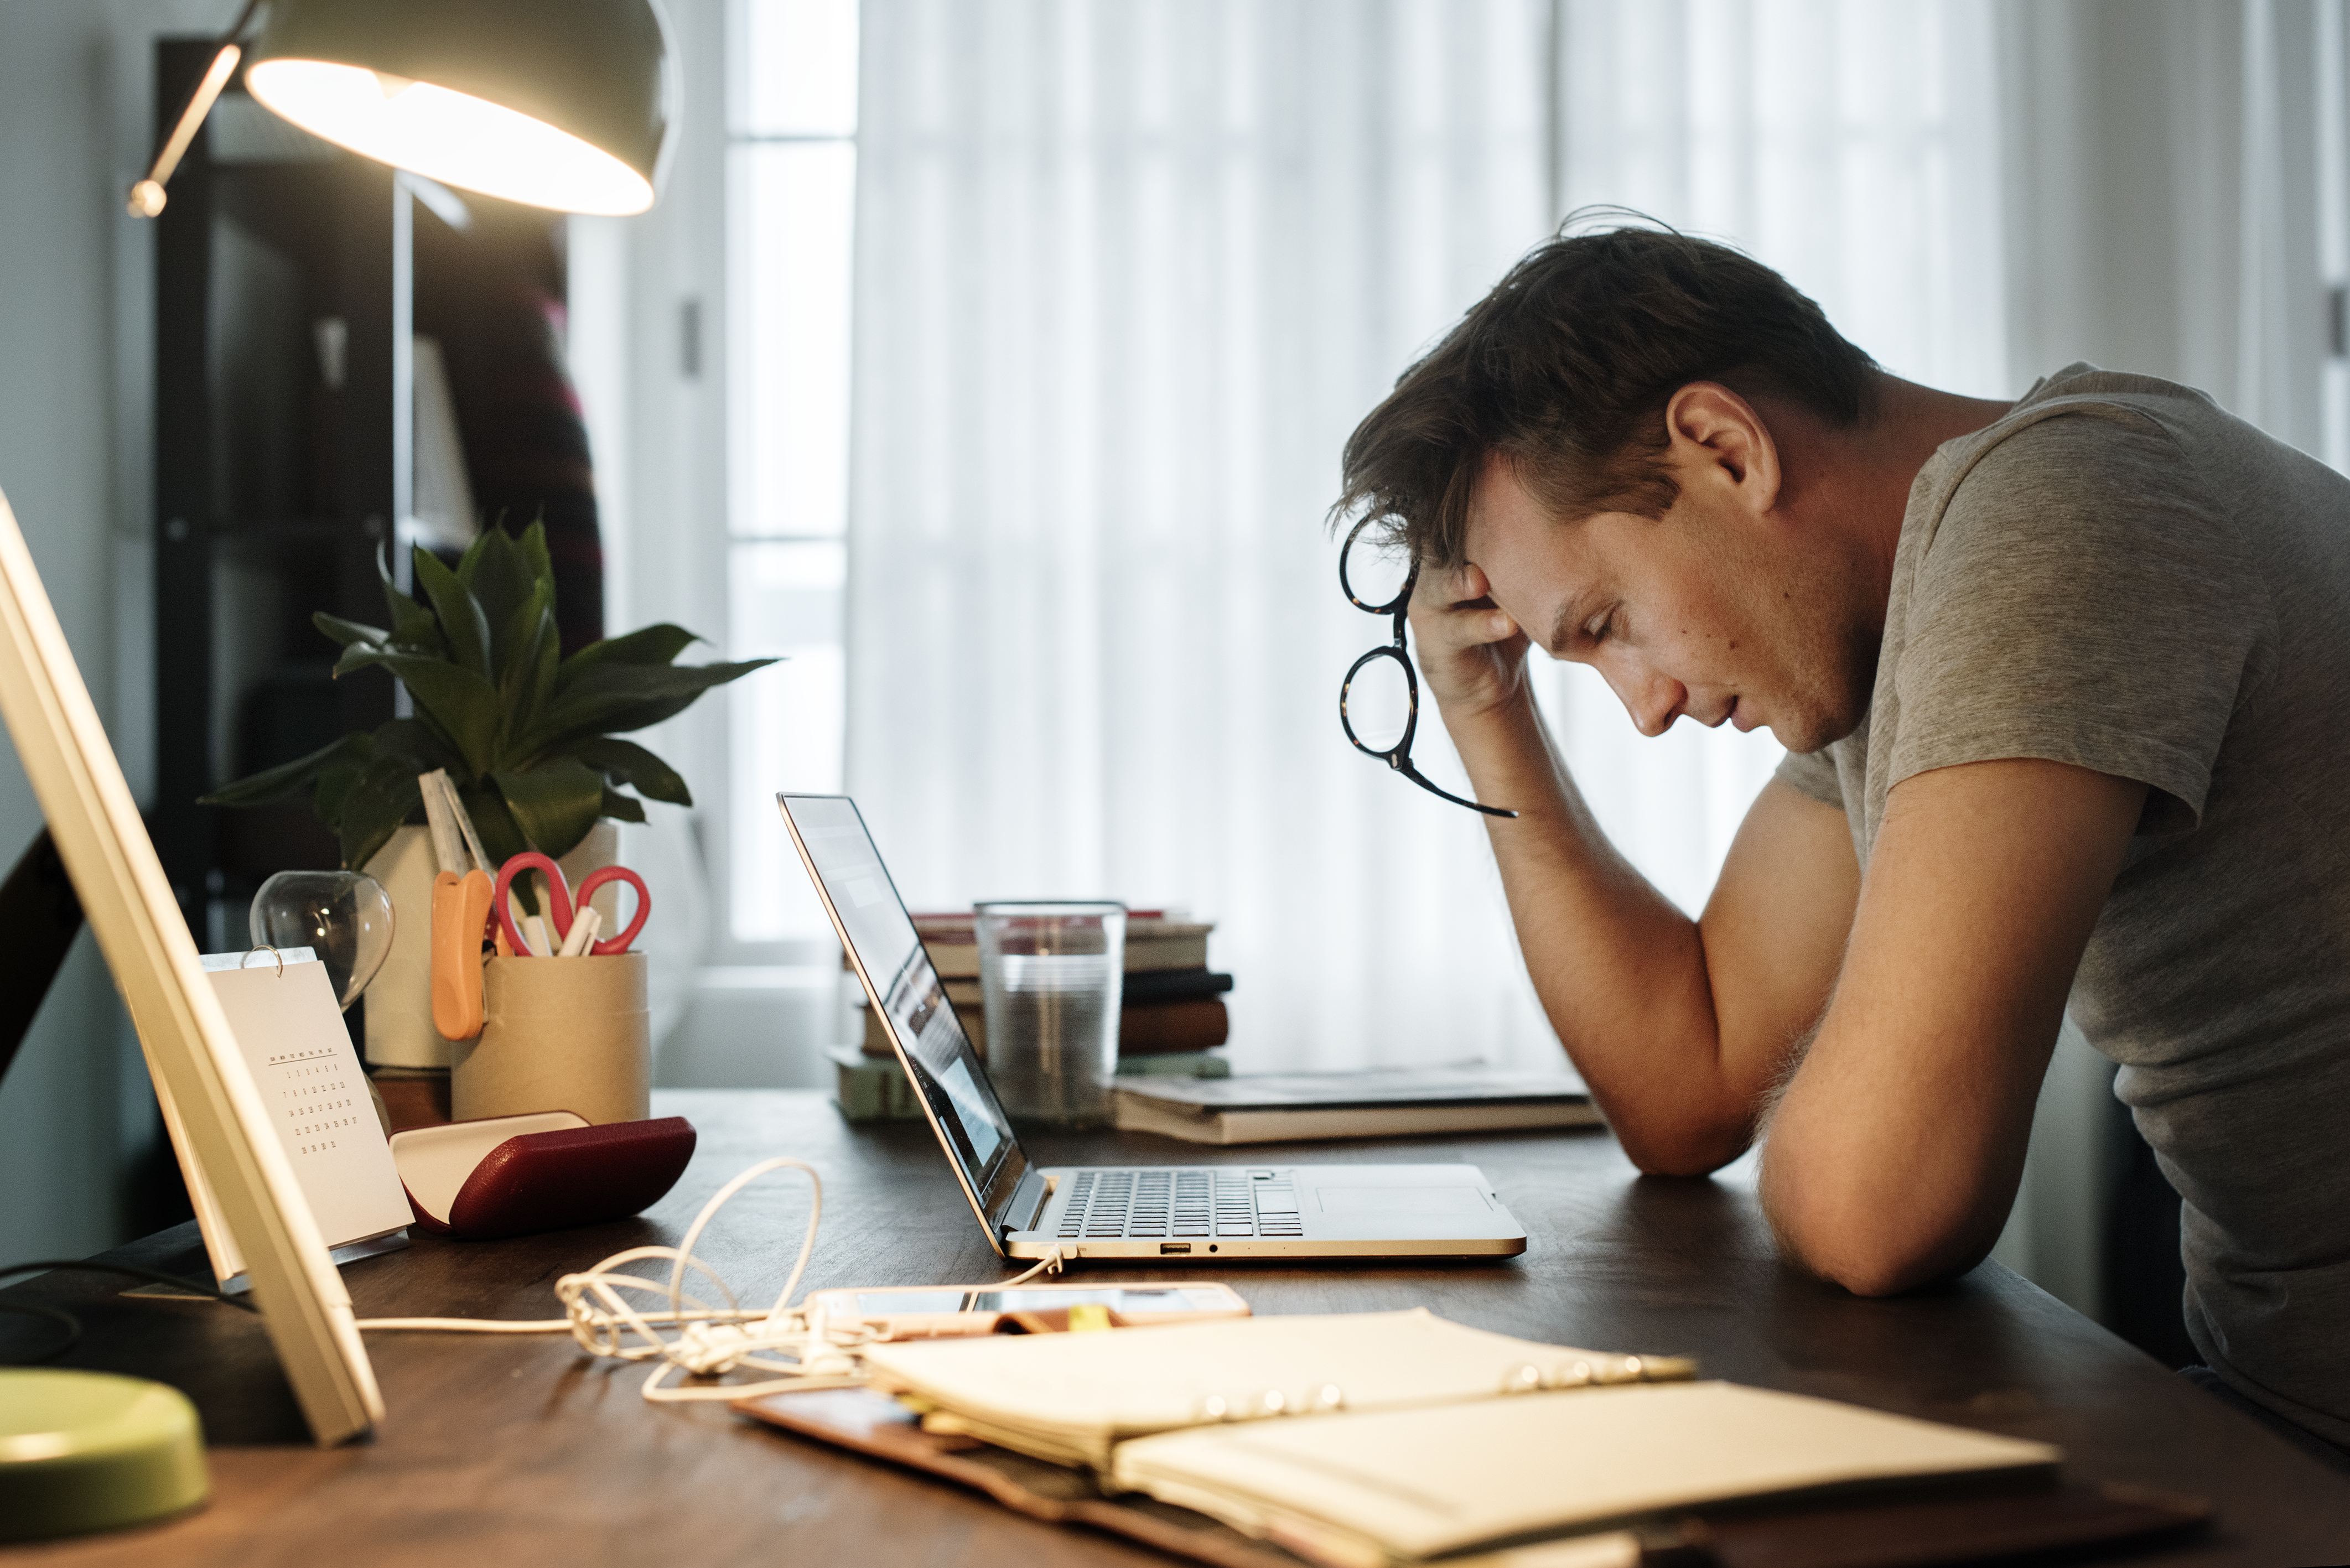 Homme stressé alors qu'il travaille sur son ordinateur portable | Source : Getty Images